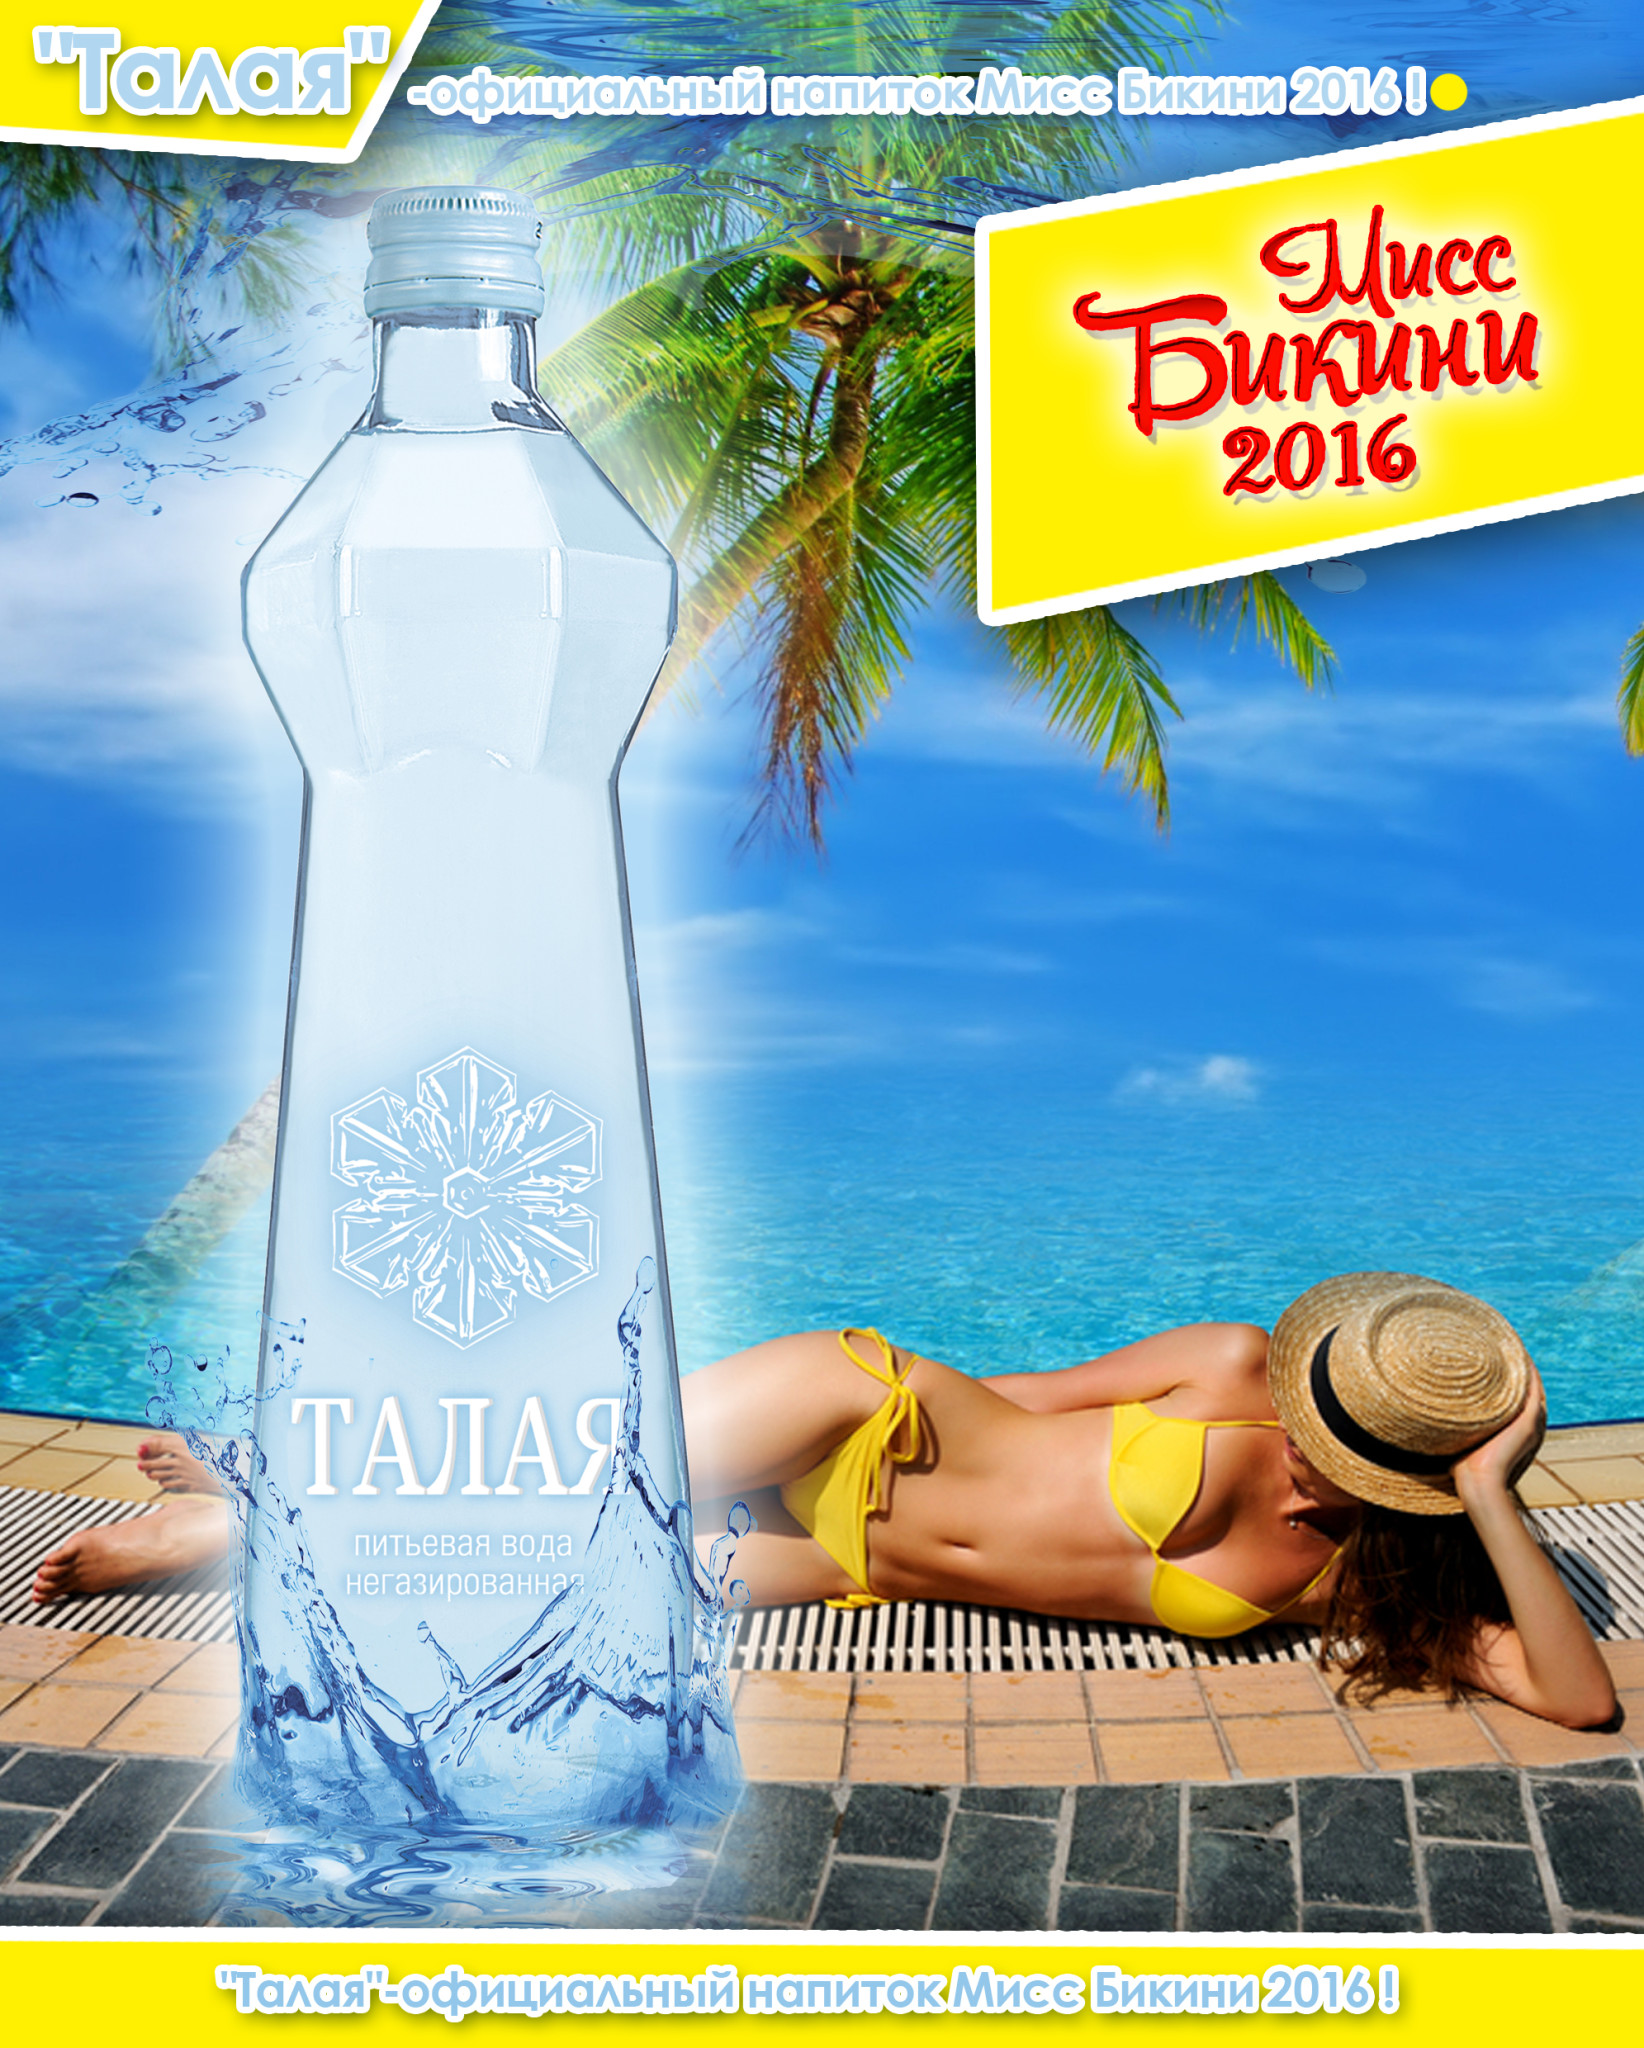 饮用水“Talaya”成为“2016比基尼小姐”的官方饮品